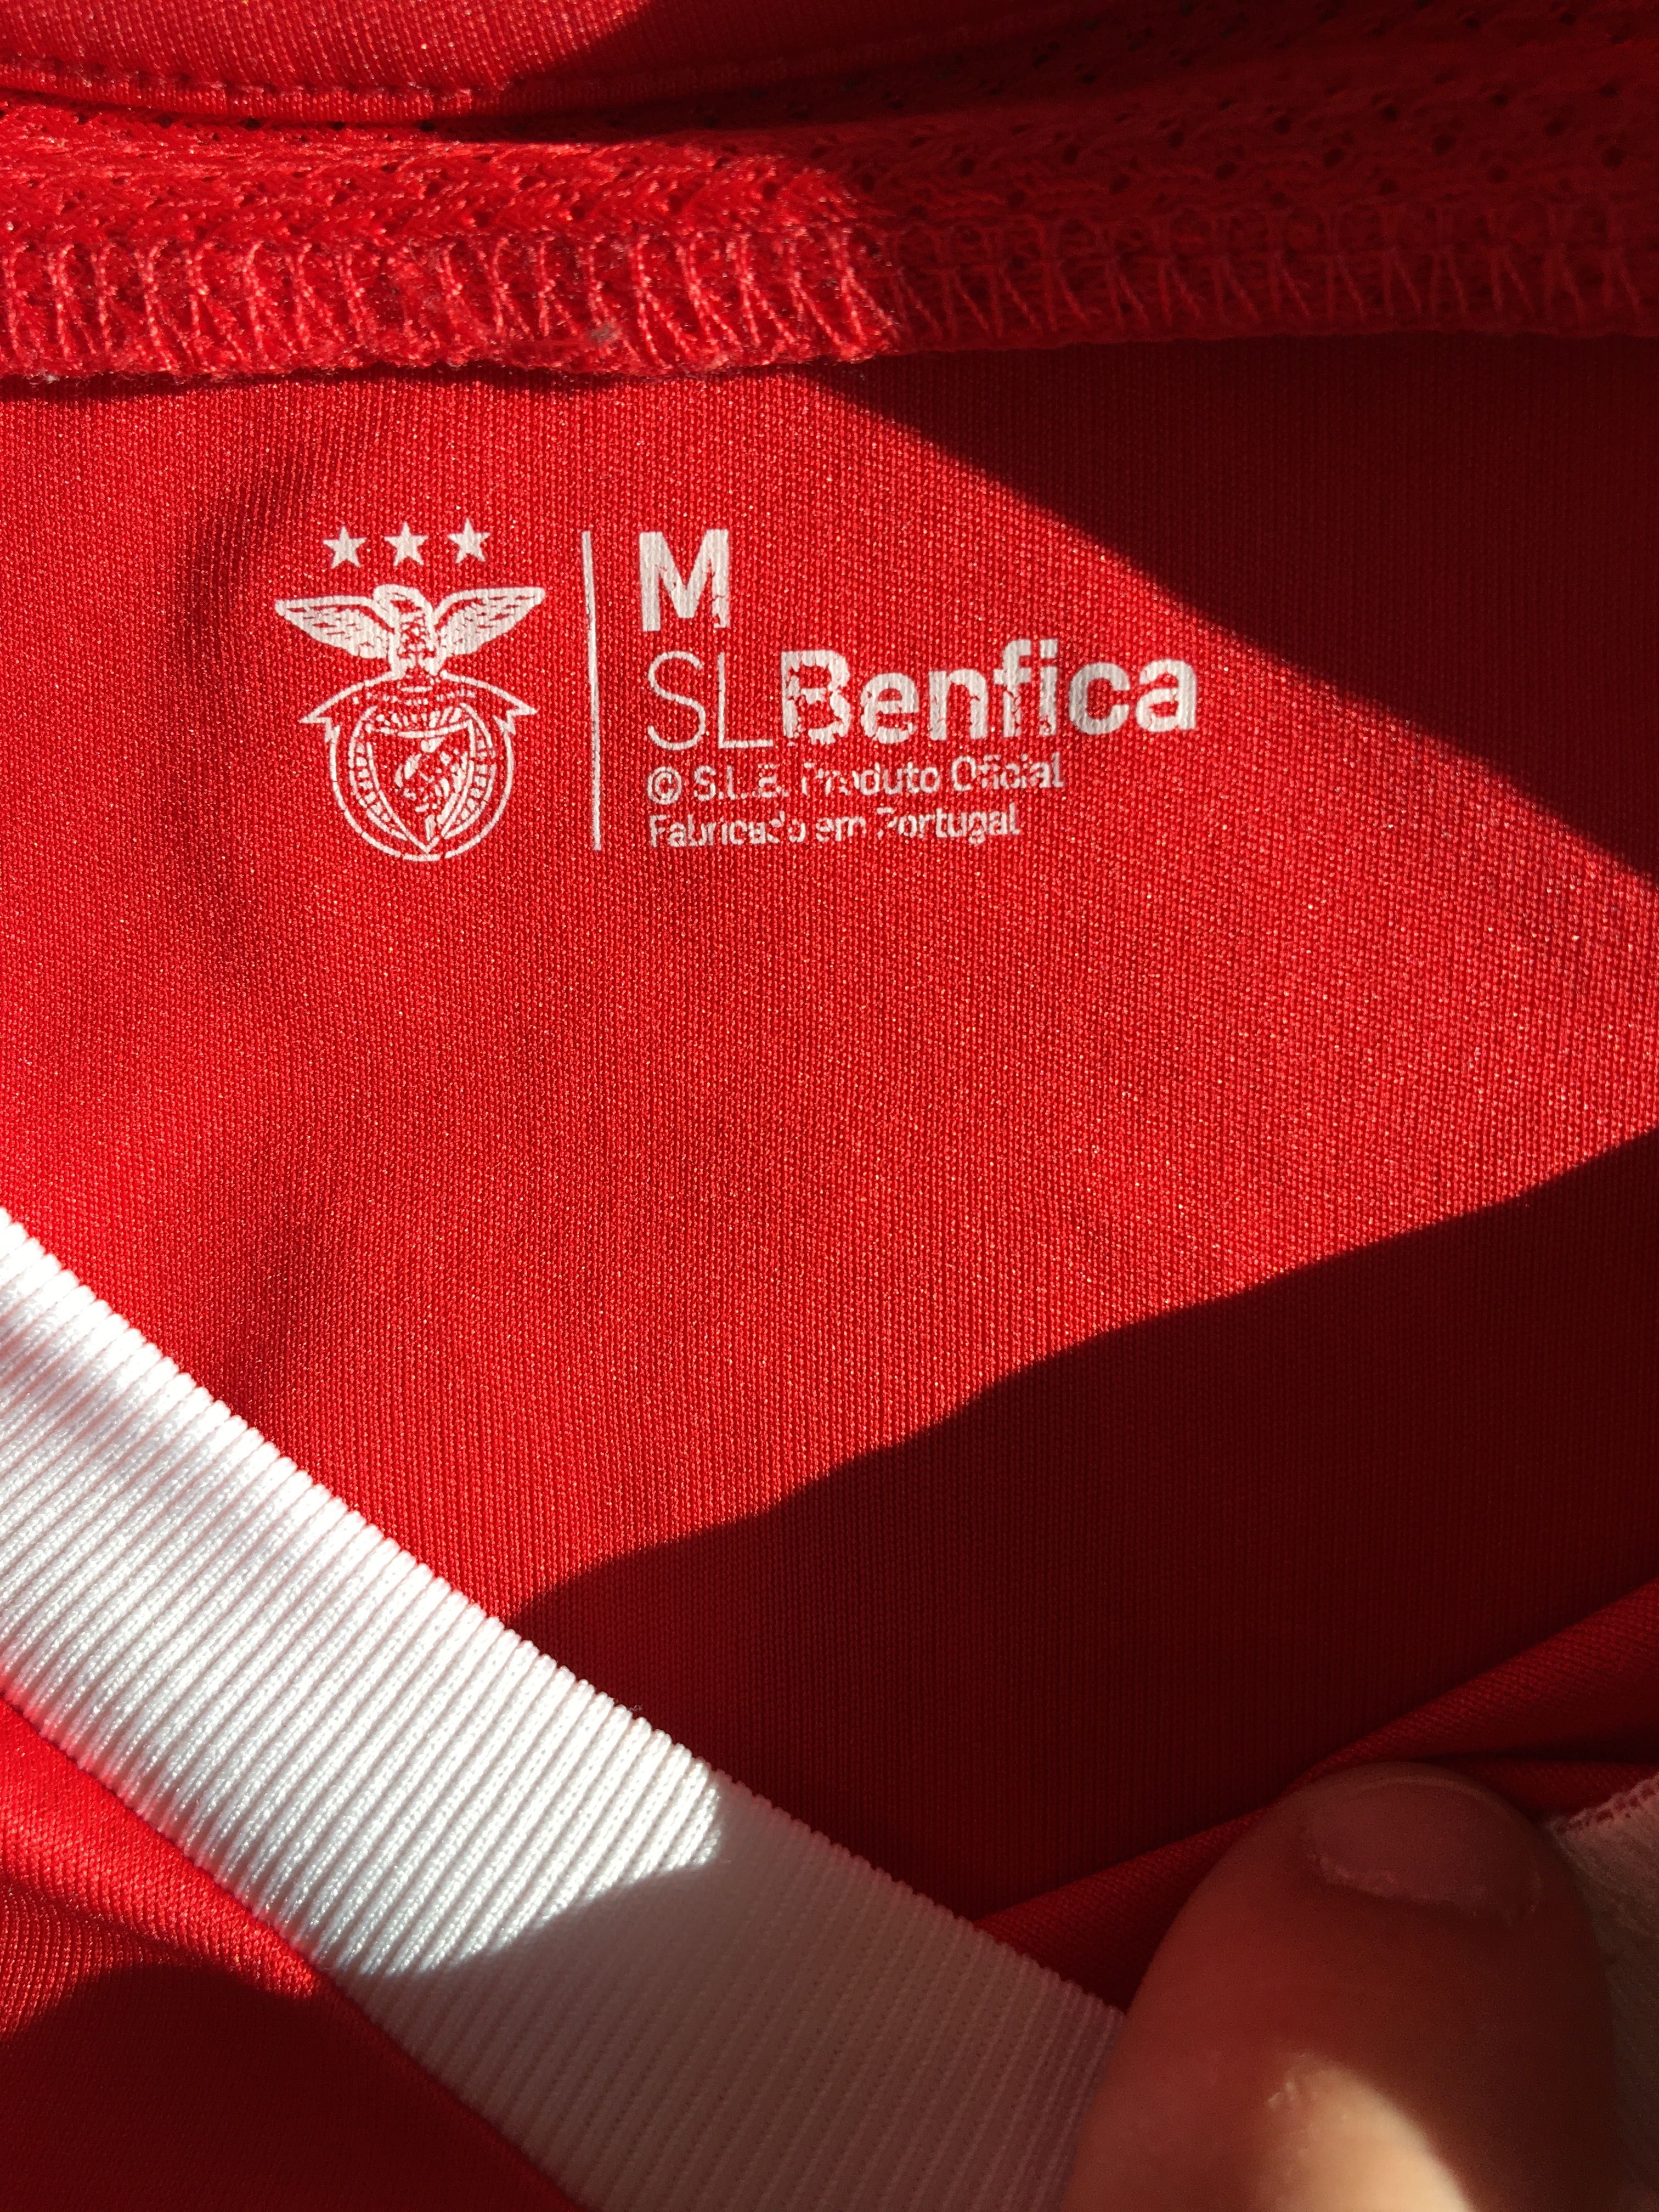 Camisola oficial Benfica 2016.2017